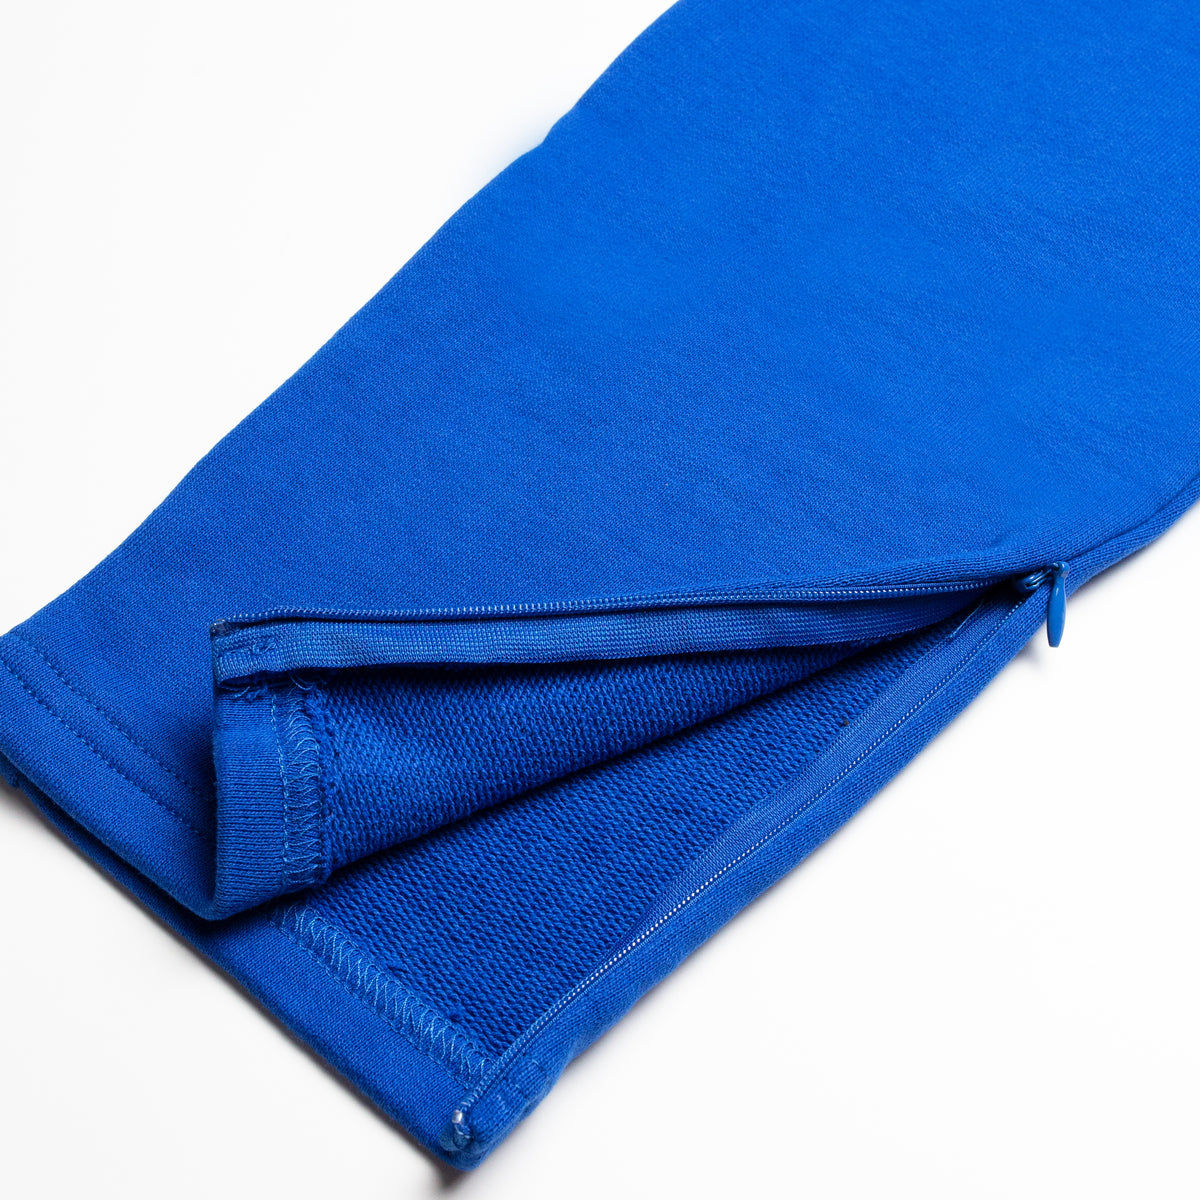 Blanks Zipper Sweats | Cobalt Blue